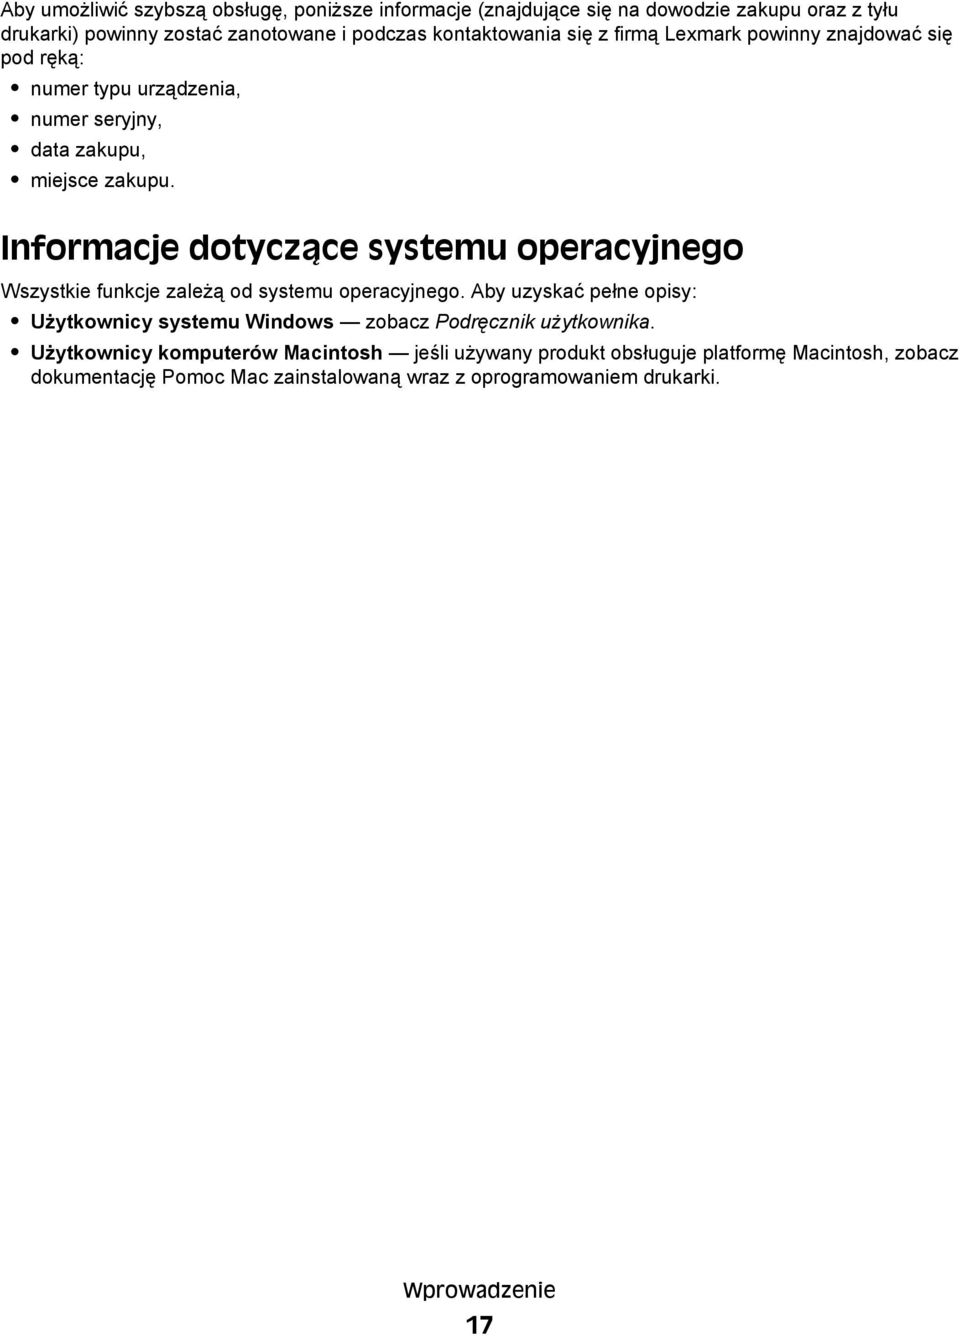 Informacje dotyczące systemu operacyjnego Wszystkie funkcje zależą od systemu operacyjnego.